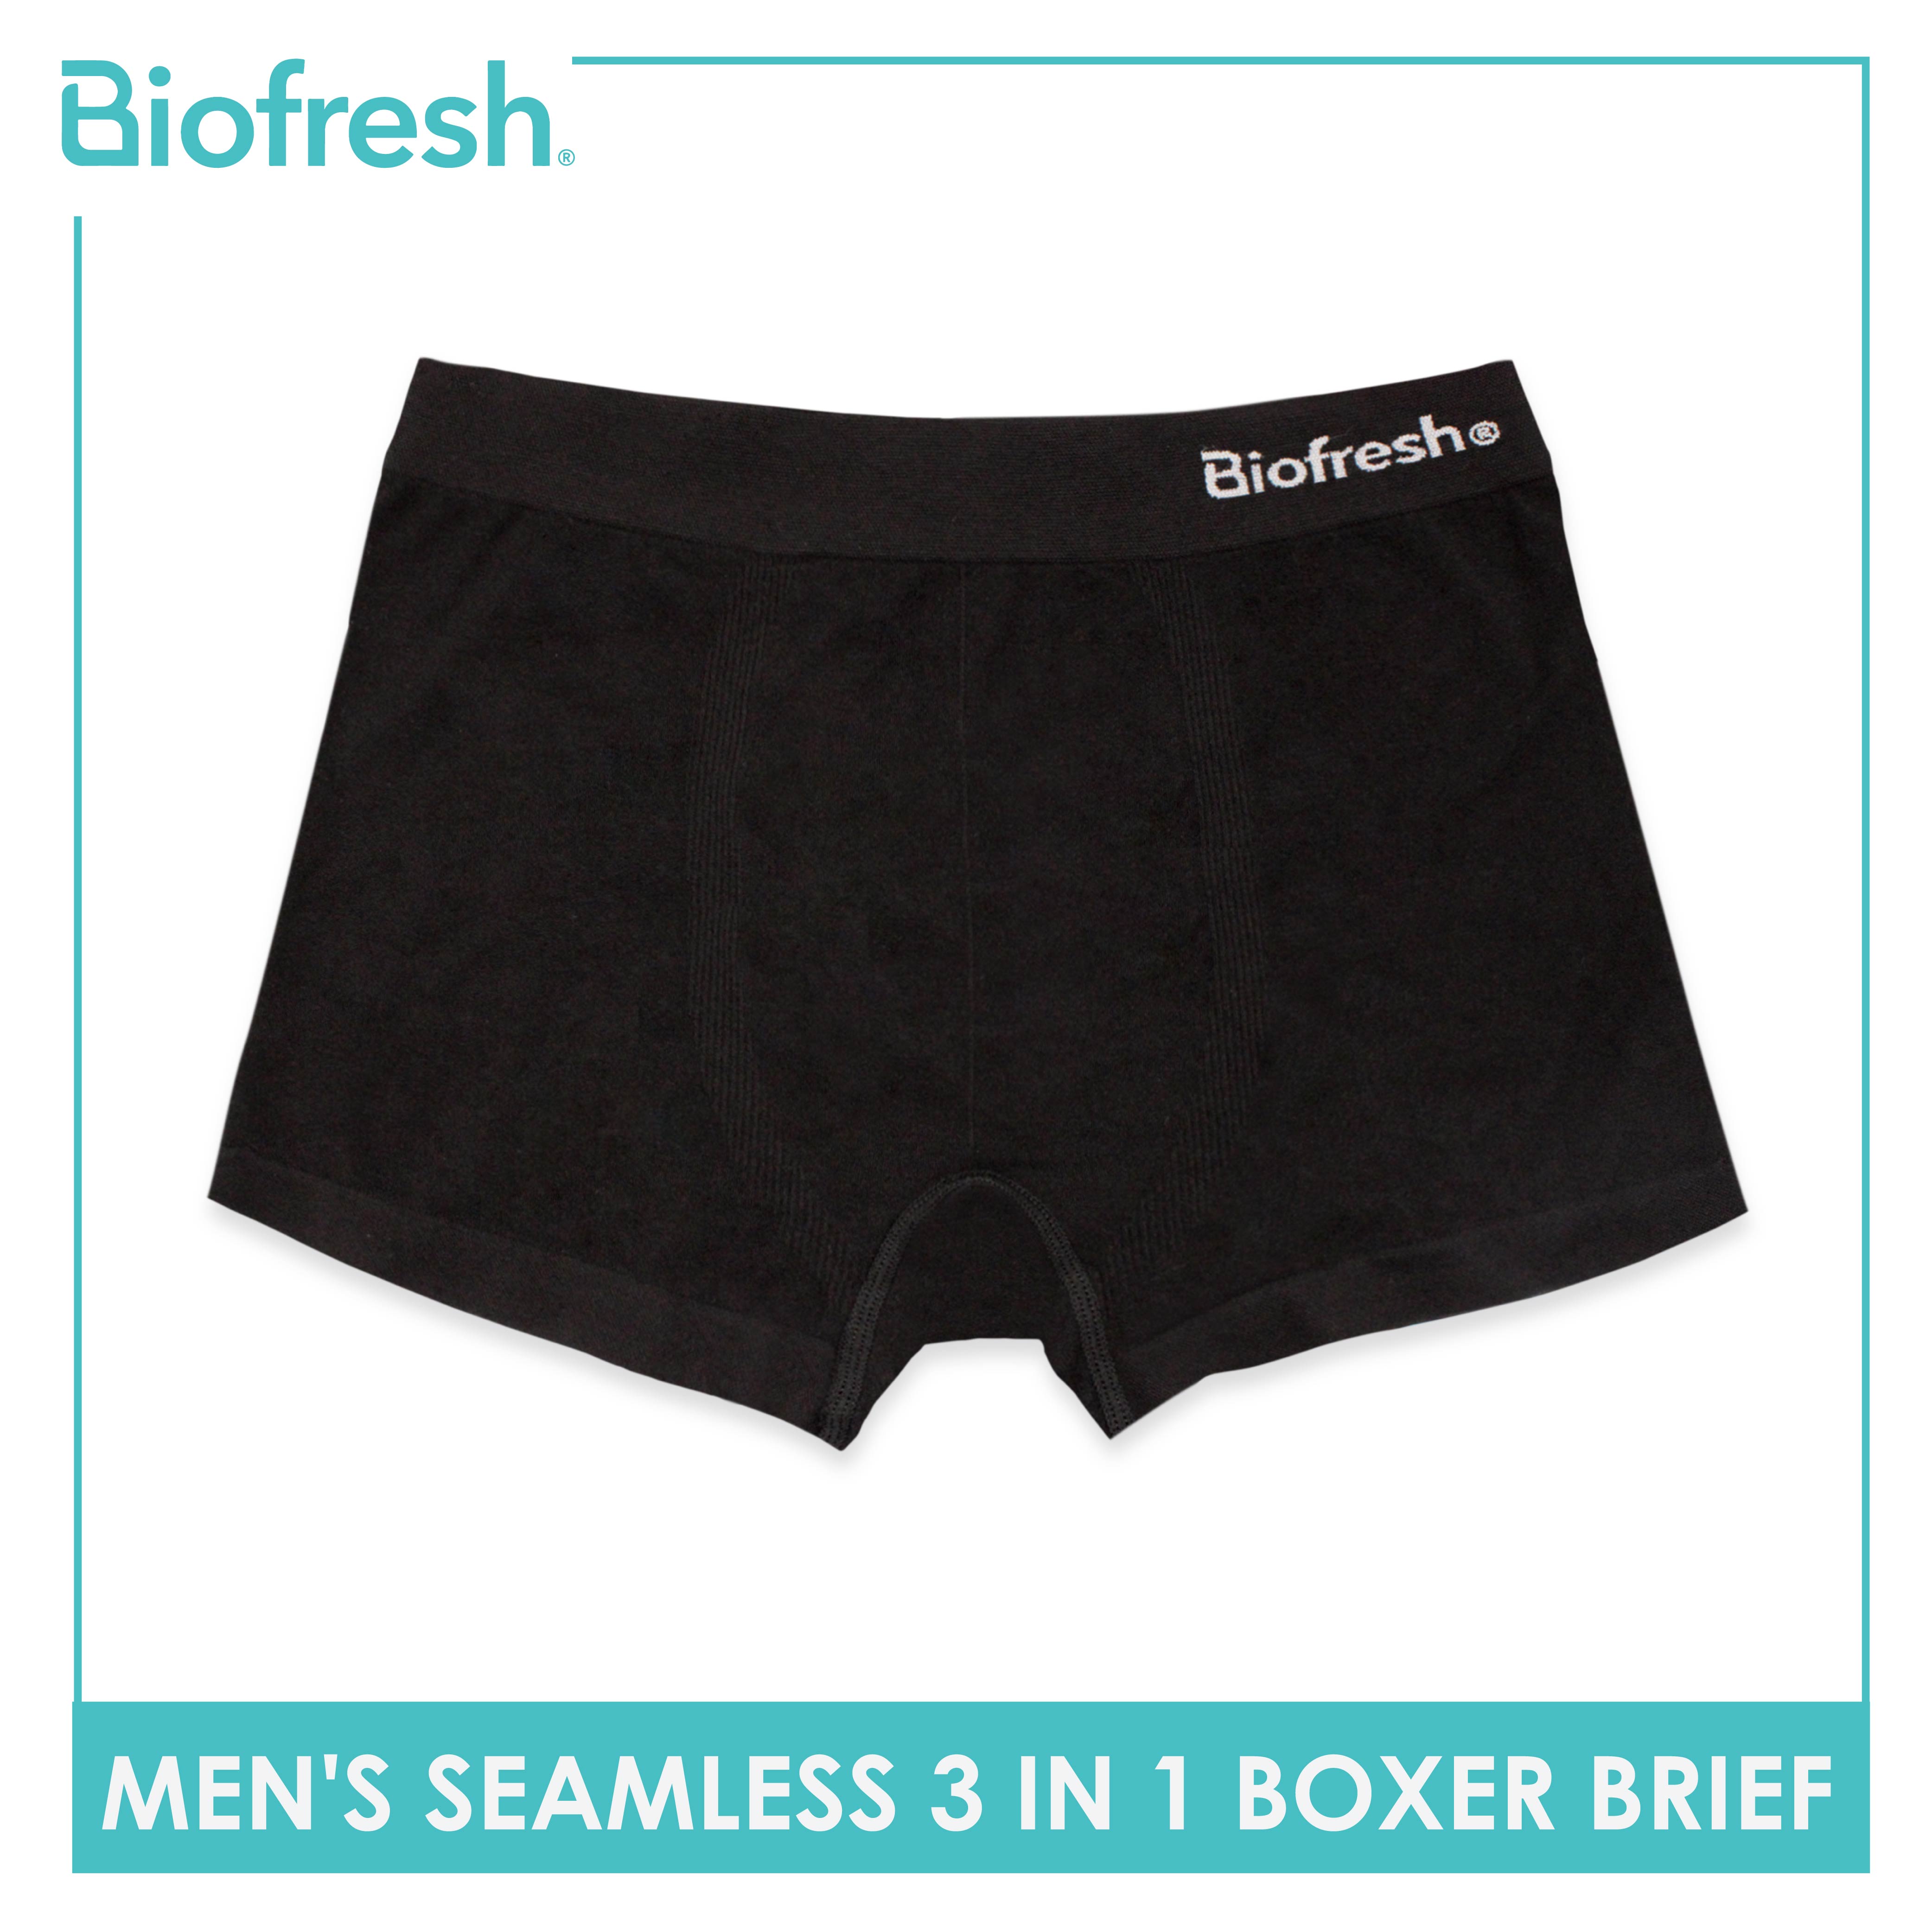 Buy Biofresh Underwear For Women online